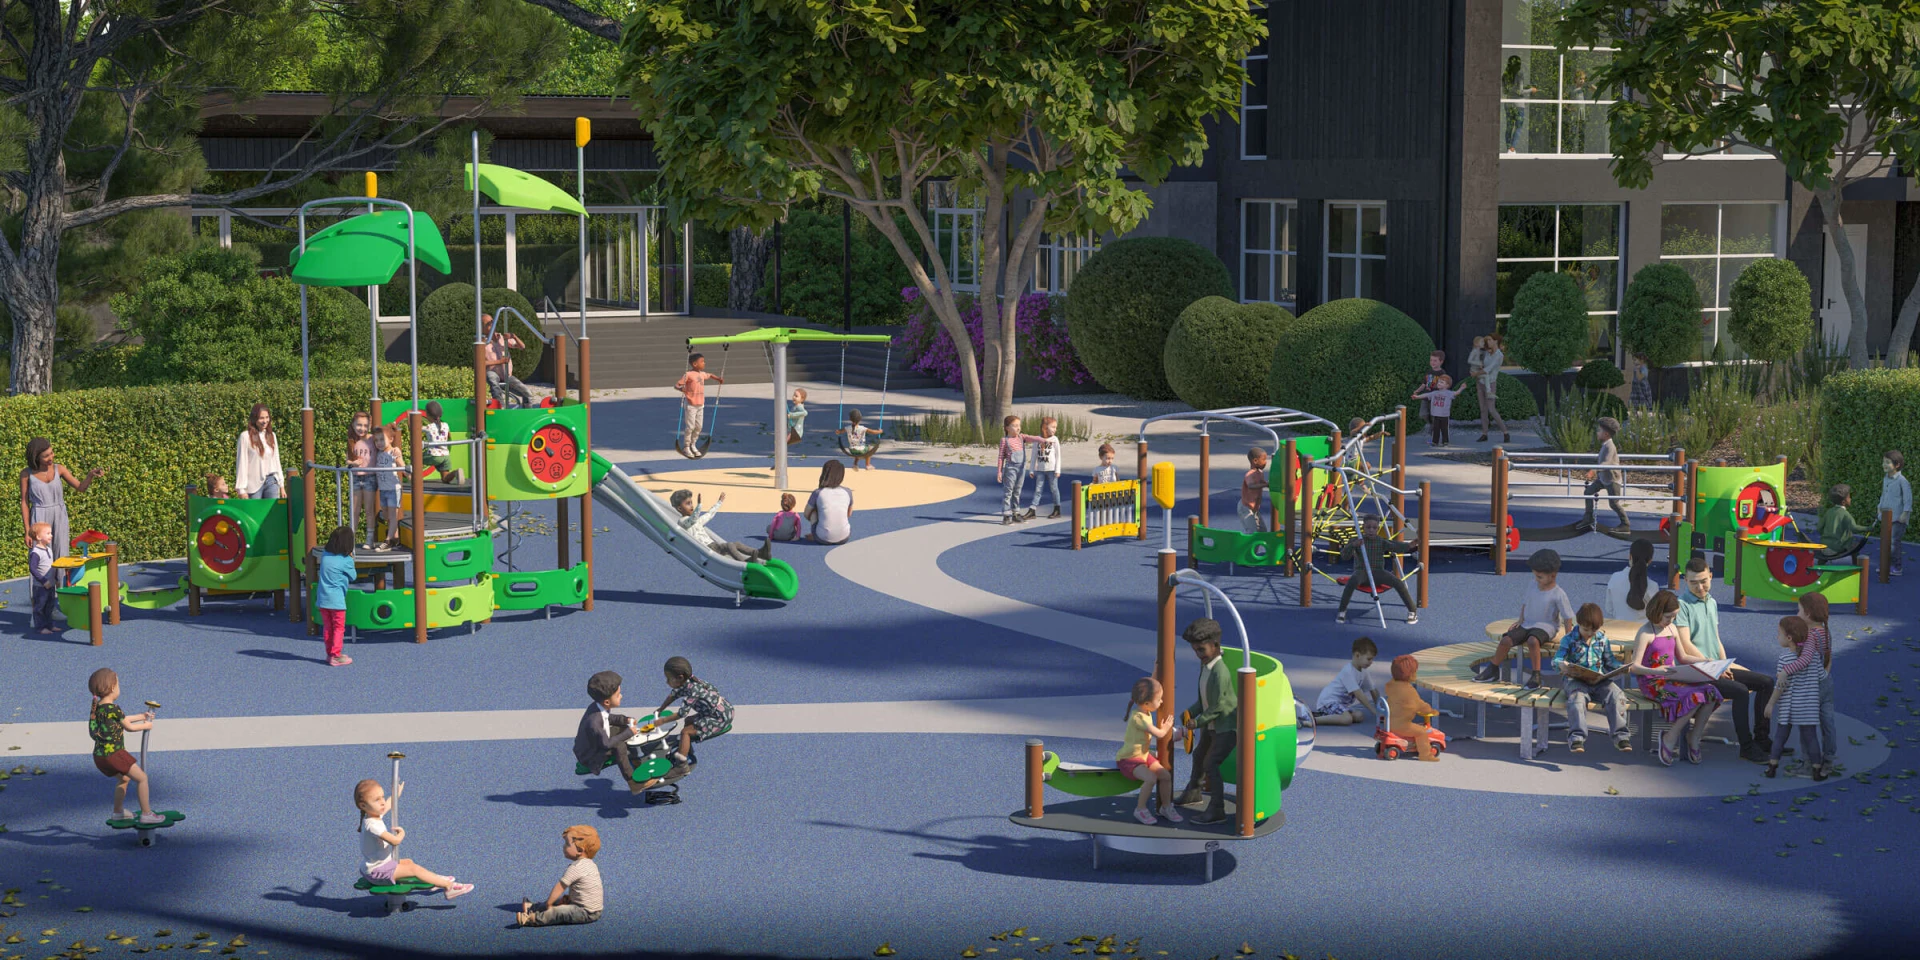 Idea de diseño de un parque infantil con numerosas opciones de juego para los niños